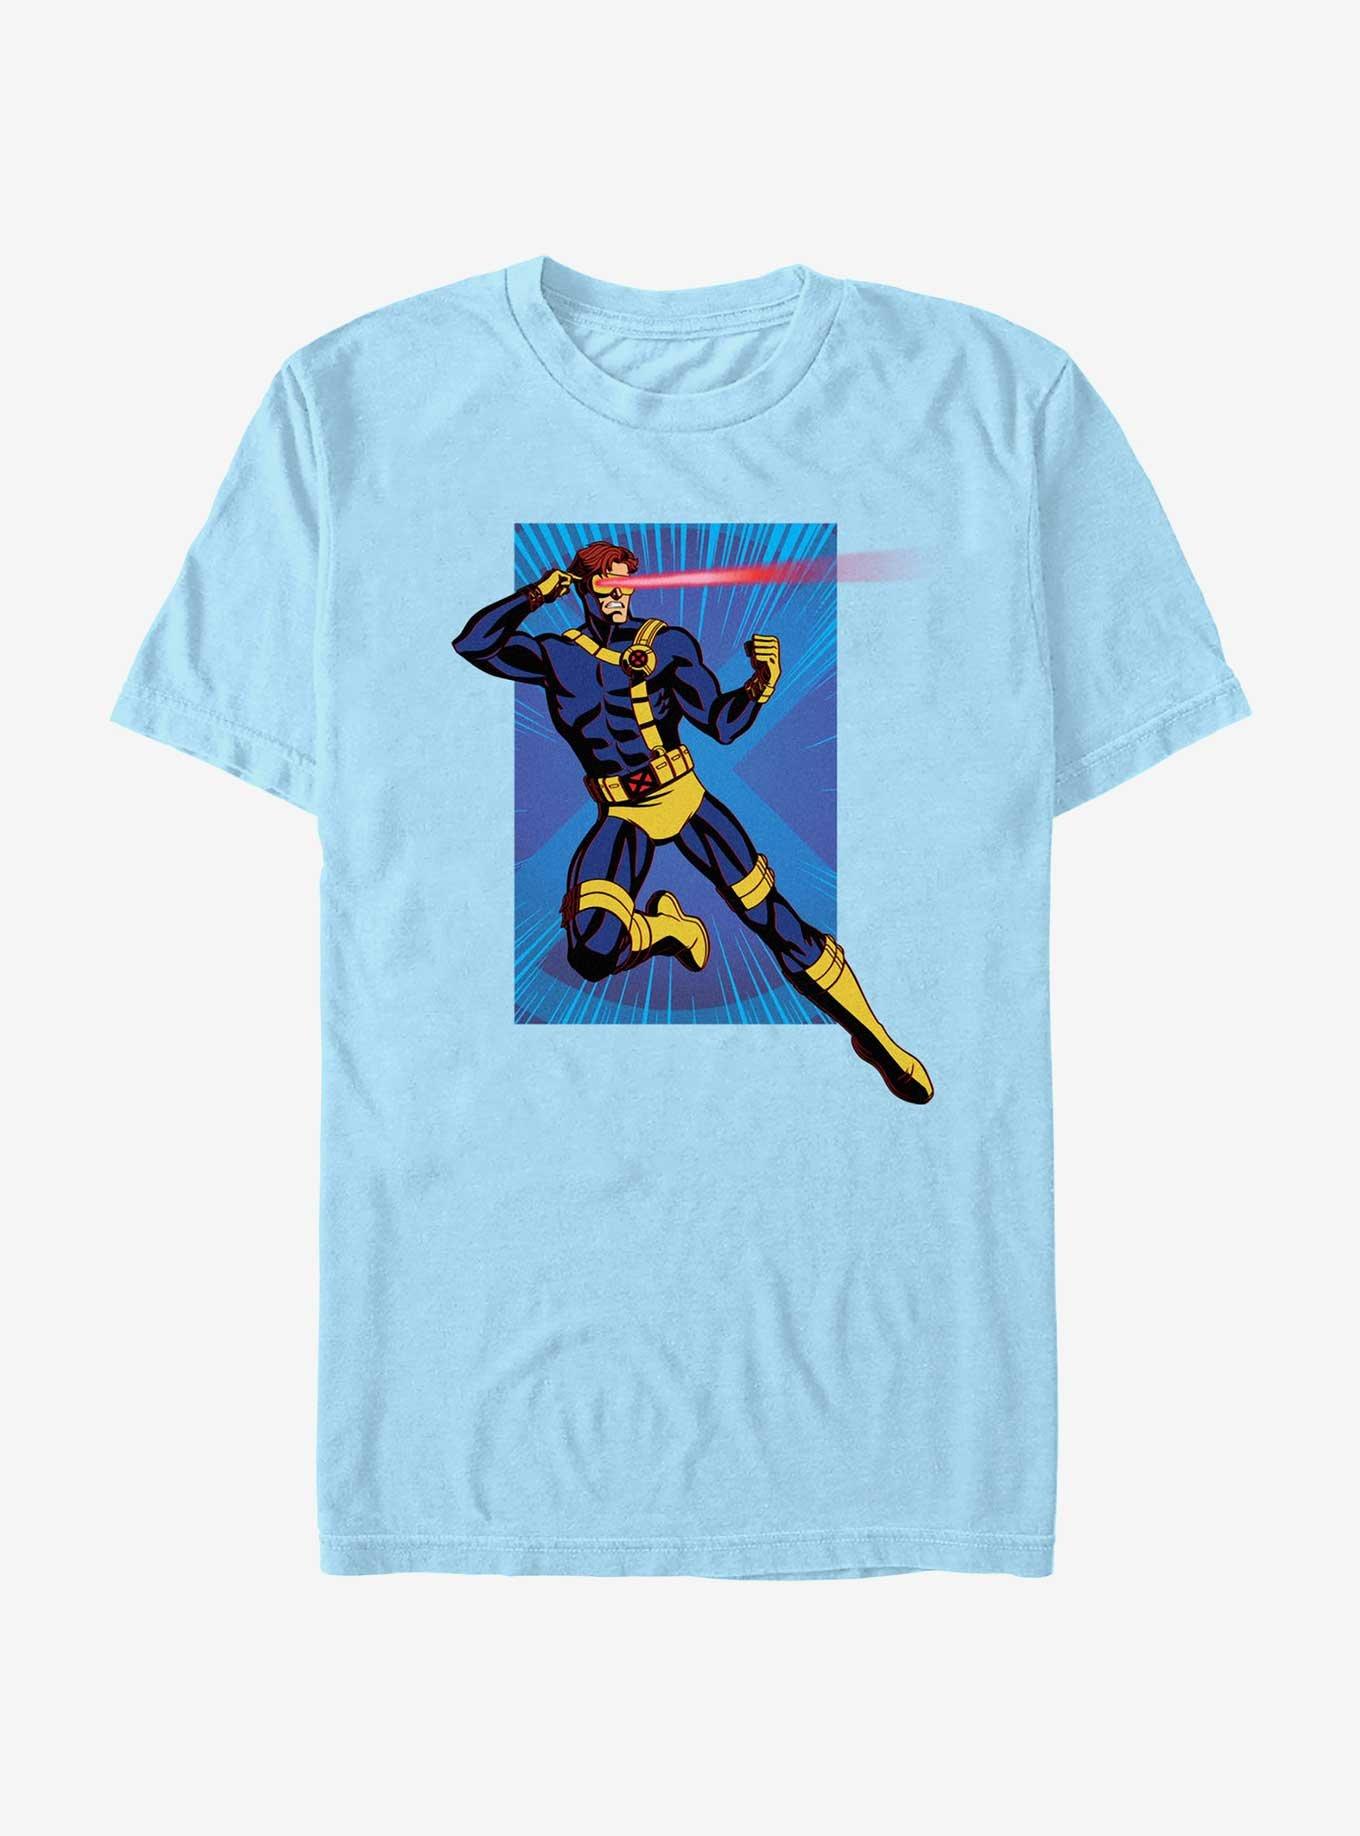 Marvel X-Men '97 Cyclops Attack T-Shirt, LT BLUE, hi-res